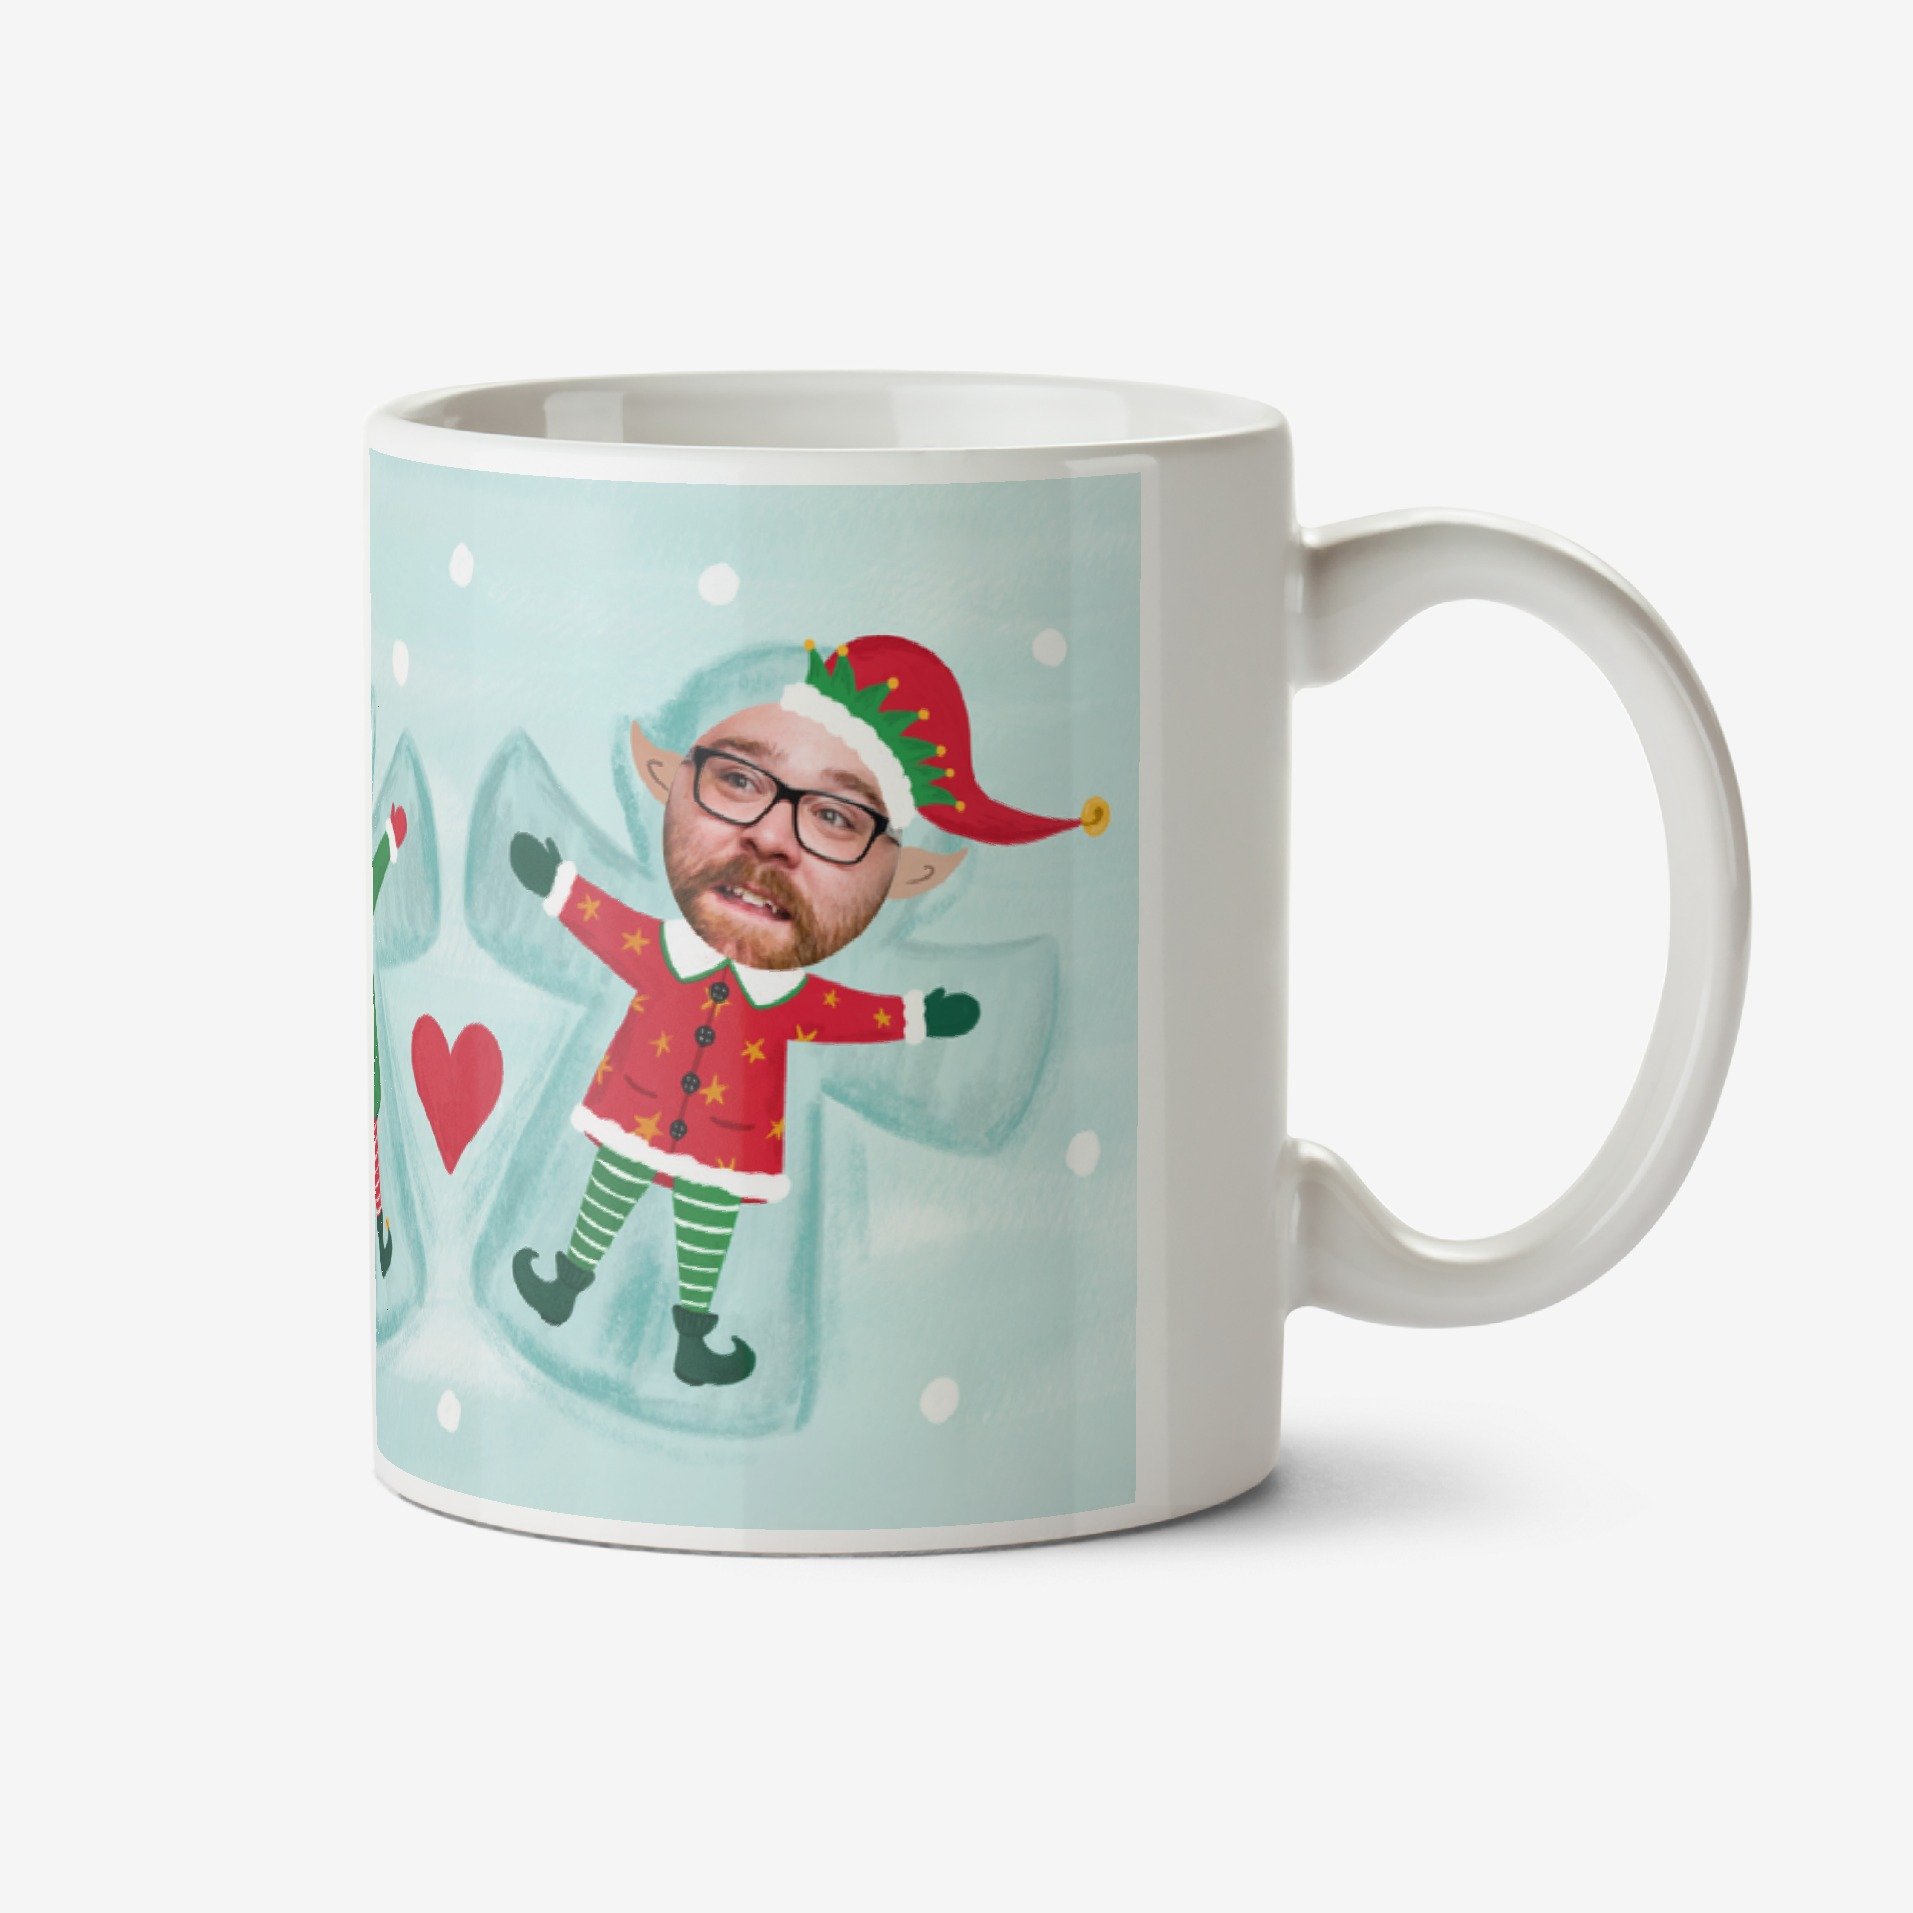 Moonpig Have Yours-Elf A Very Merry Christmas Photo Upload Mug Ceramic Mug